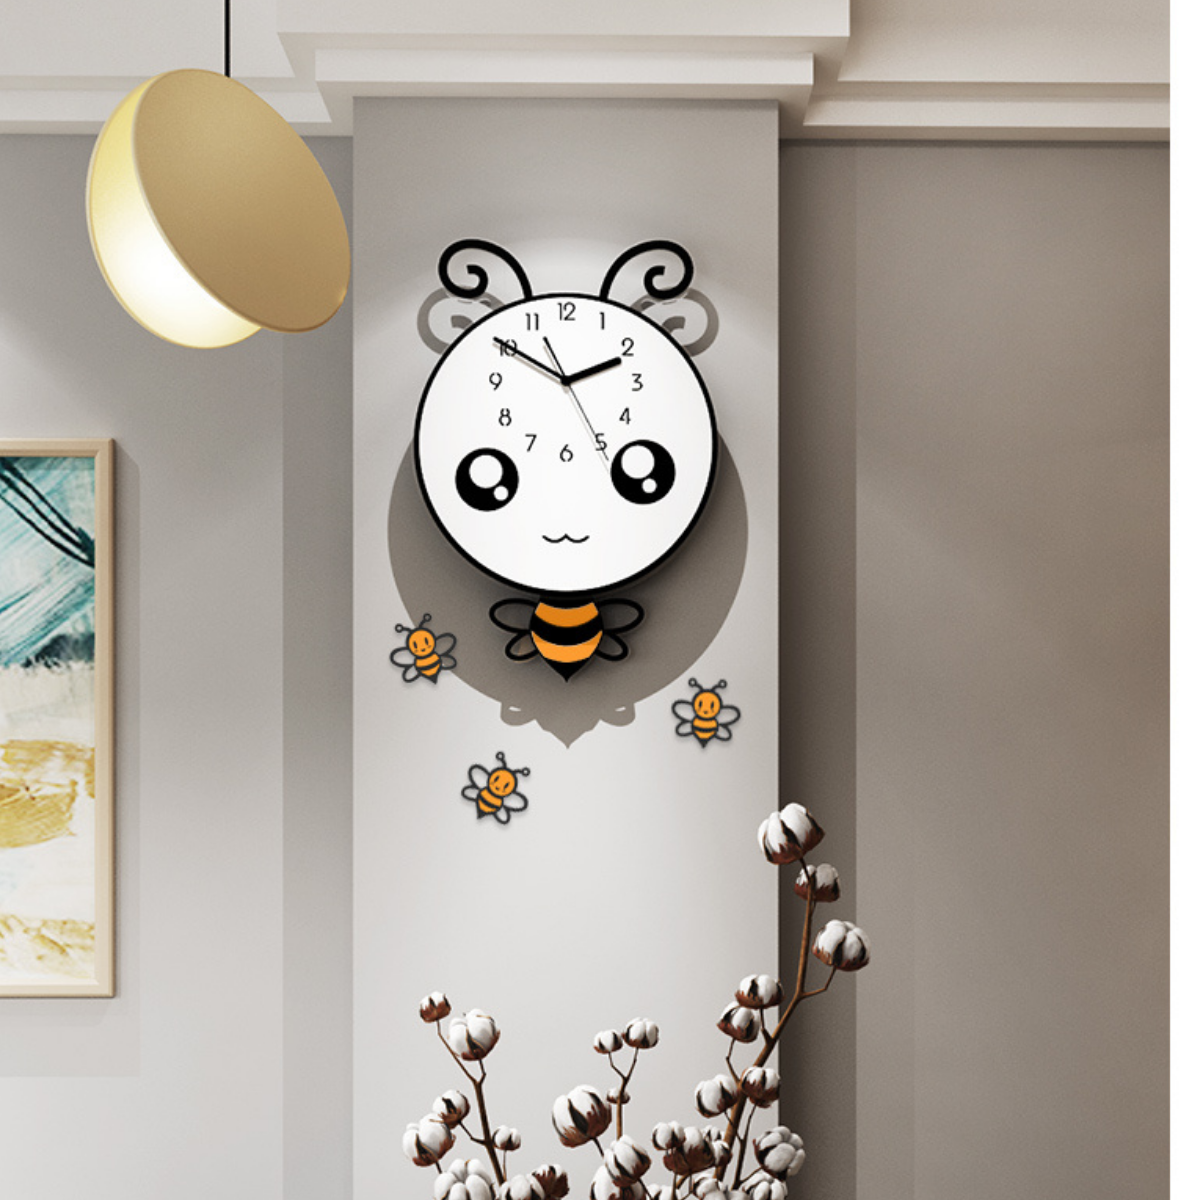 Đồng hồ trang trí hoạt hình dễ thương - KHÔNG CẦN KHOAN TƯỜNG - Tặng kèm 3 con ong nhỏ như hình, pin và  kim thay thế